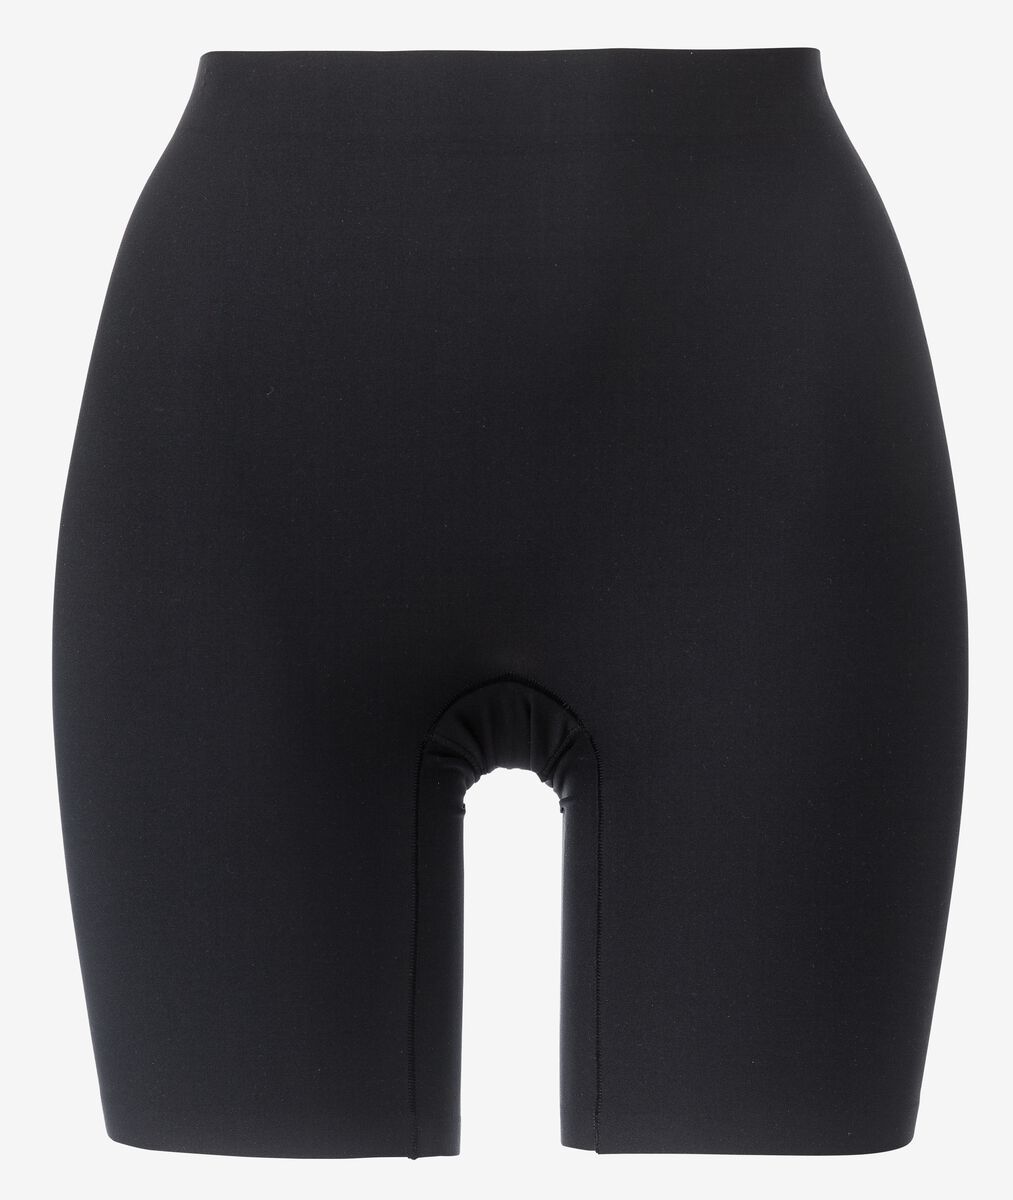 Radlerhose, mittelstark figurformend, hohe Taille schwarz M - 21570512 - HEMA